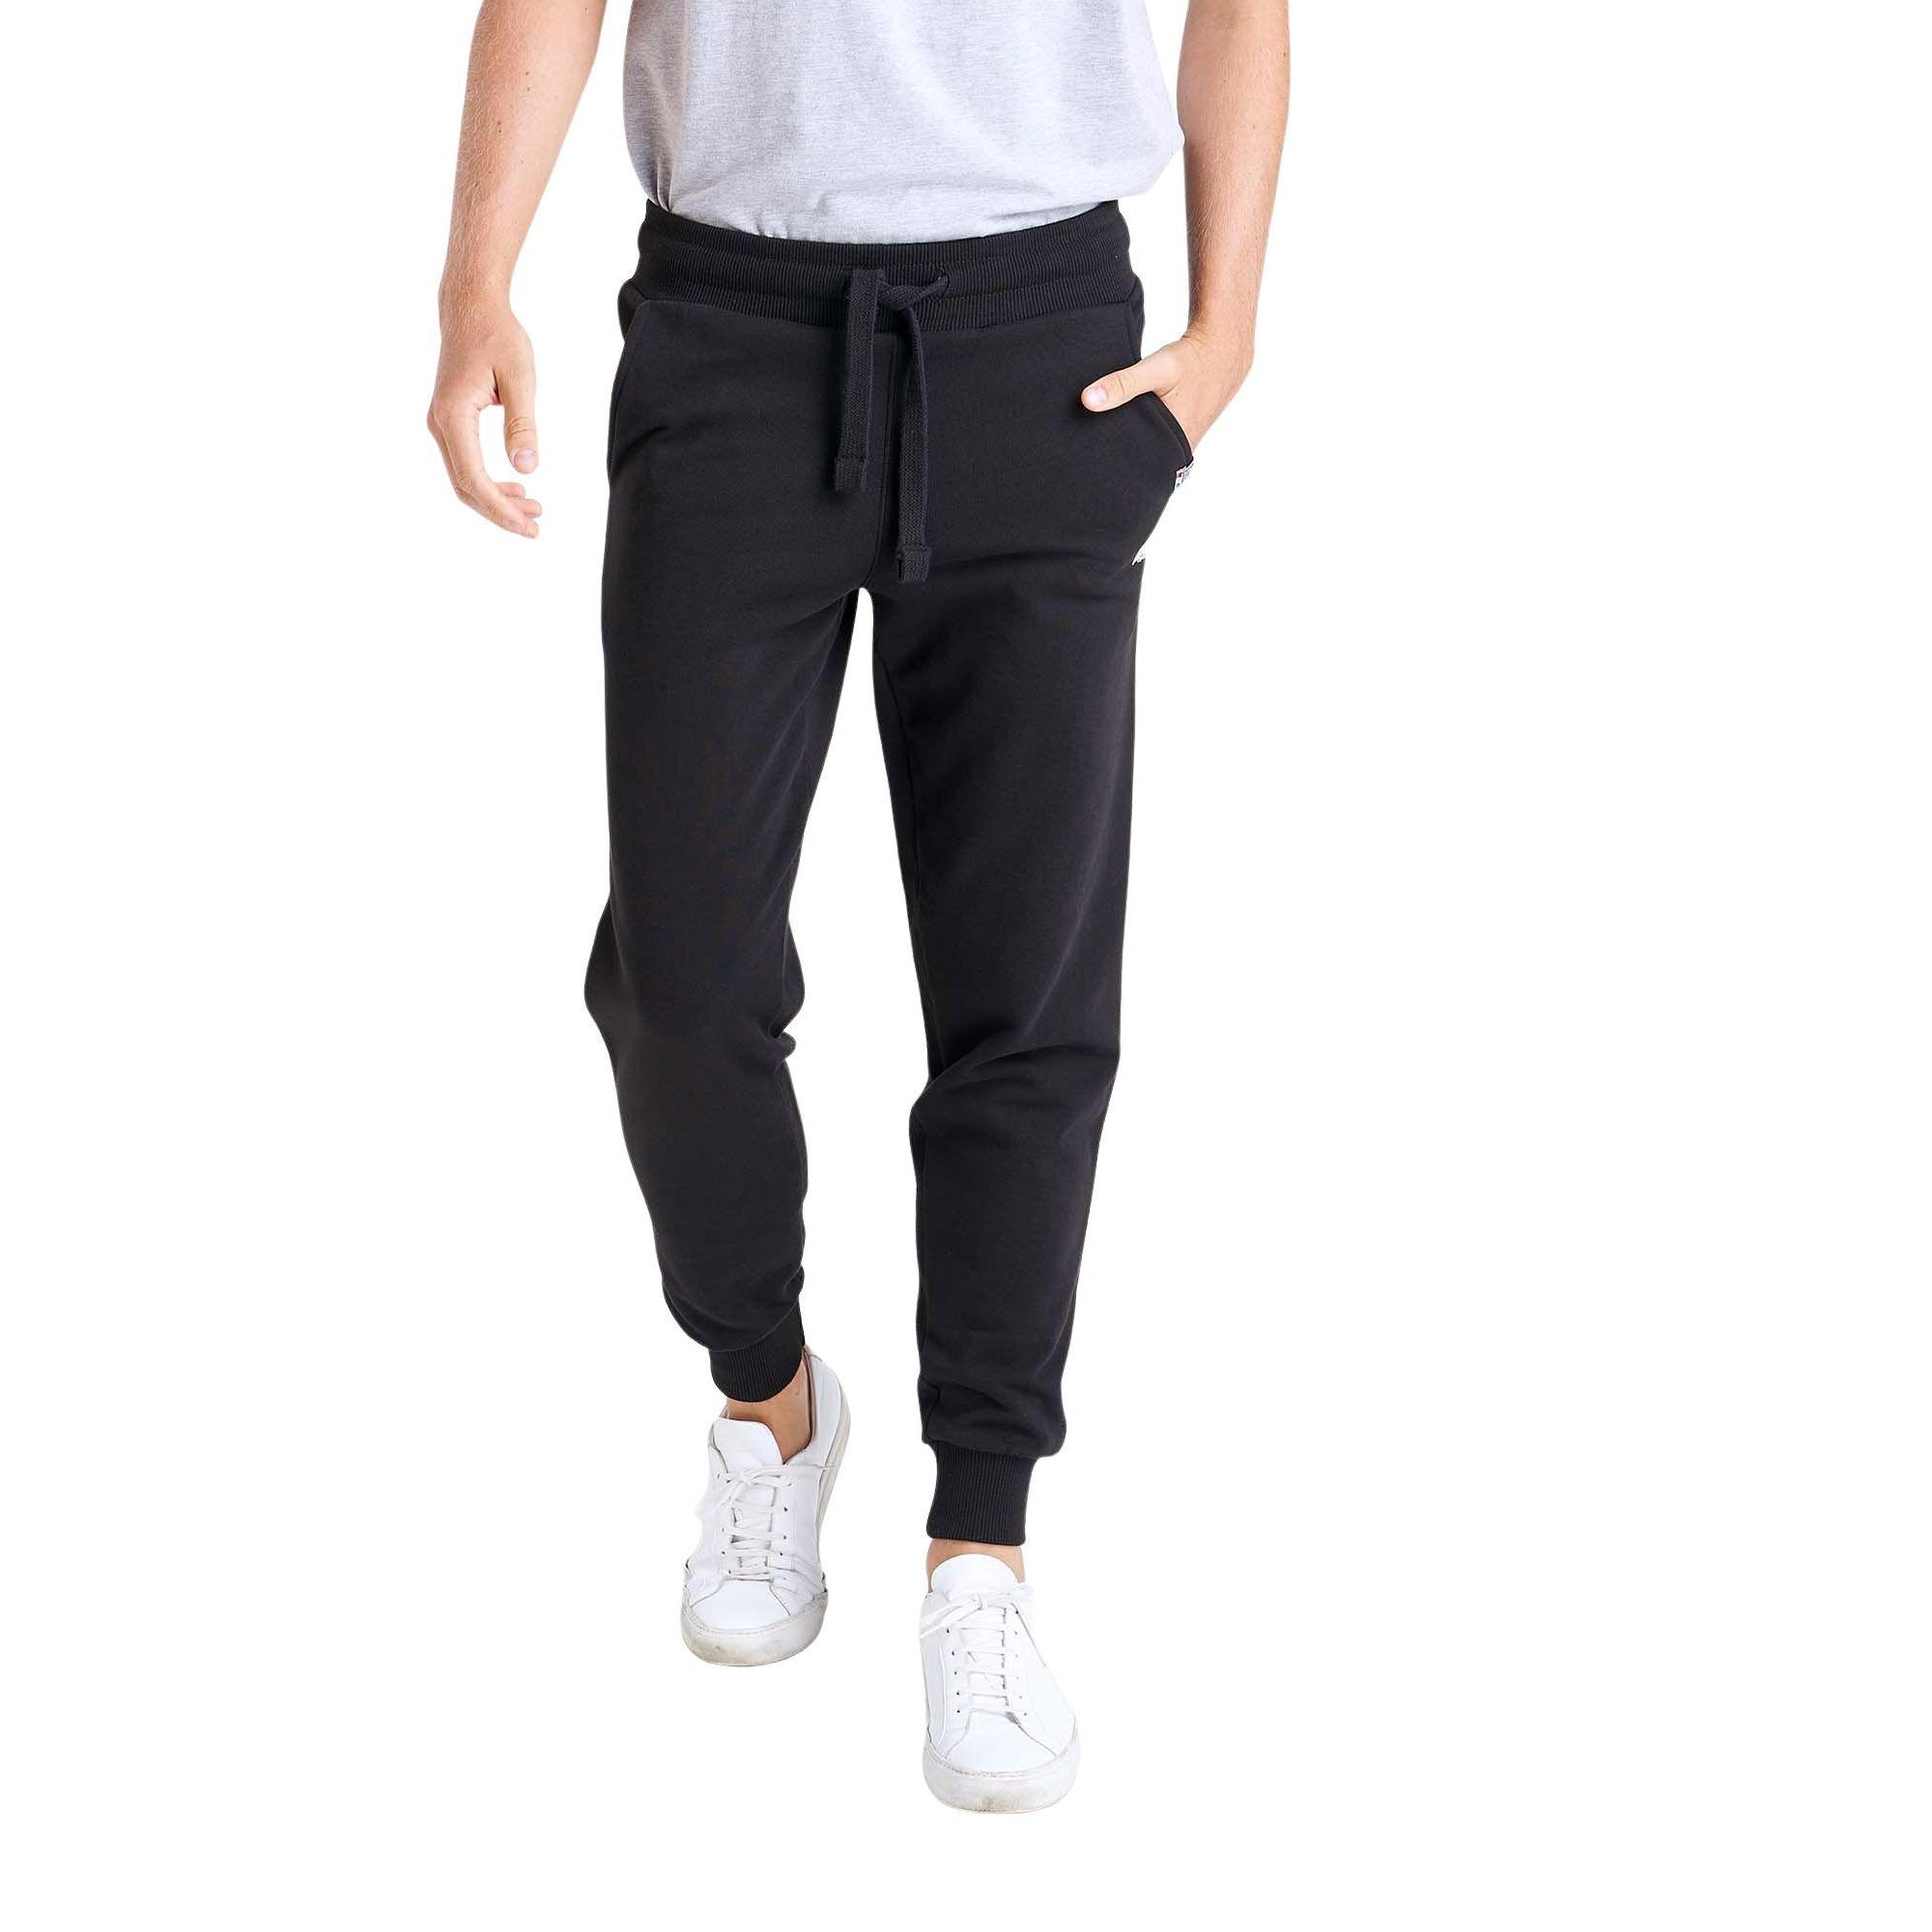 Pantalon jogger pants ceinture élastique pour homme avec logo brodé